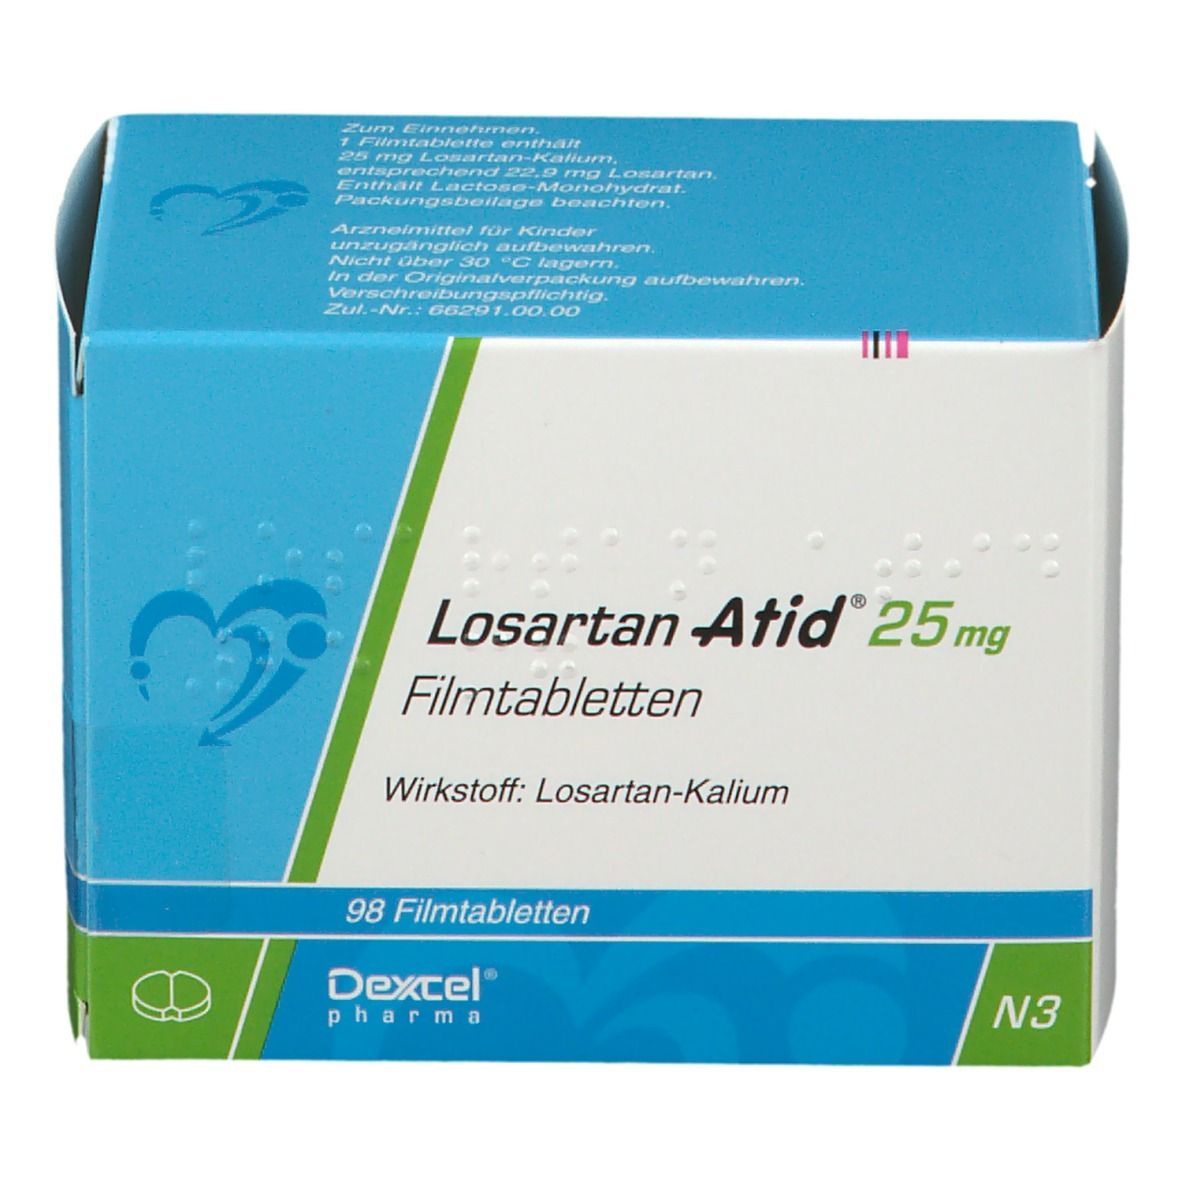 Losartan Atid® 25 mg